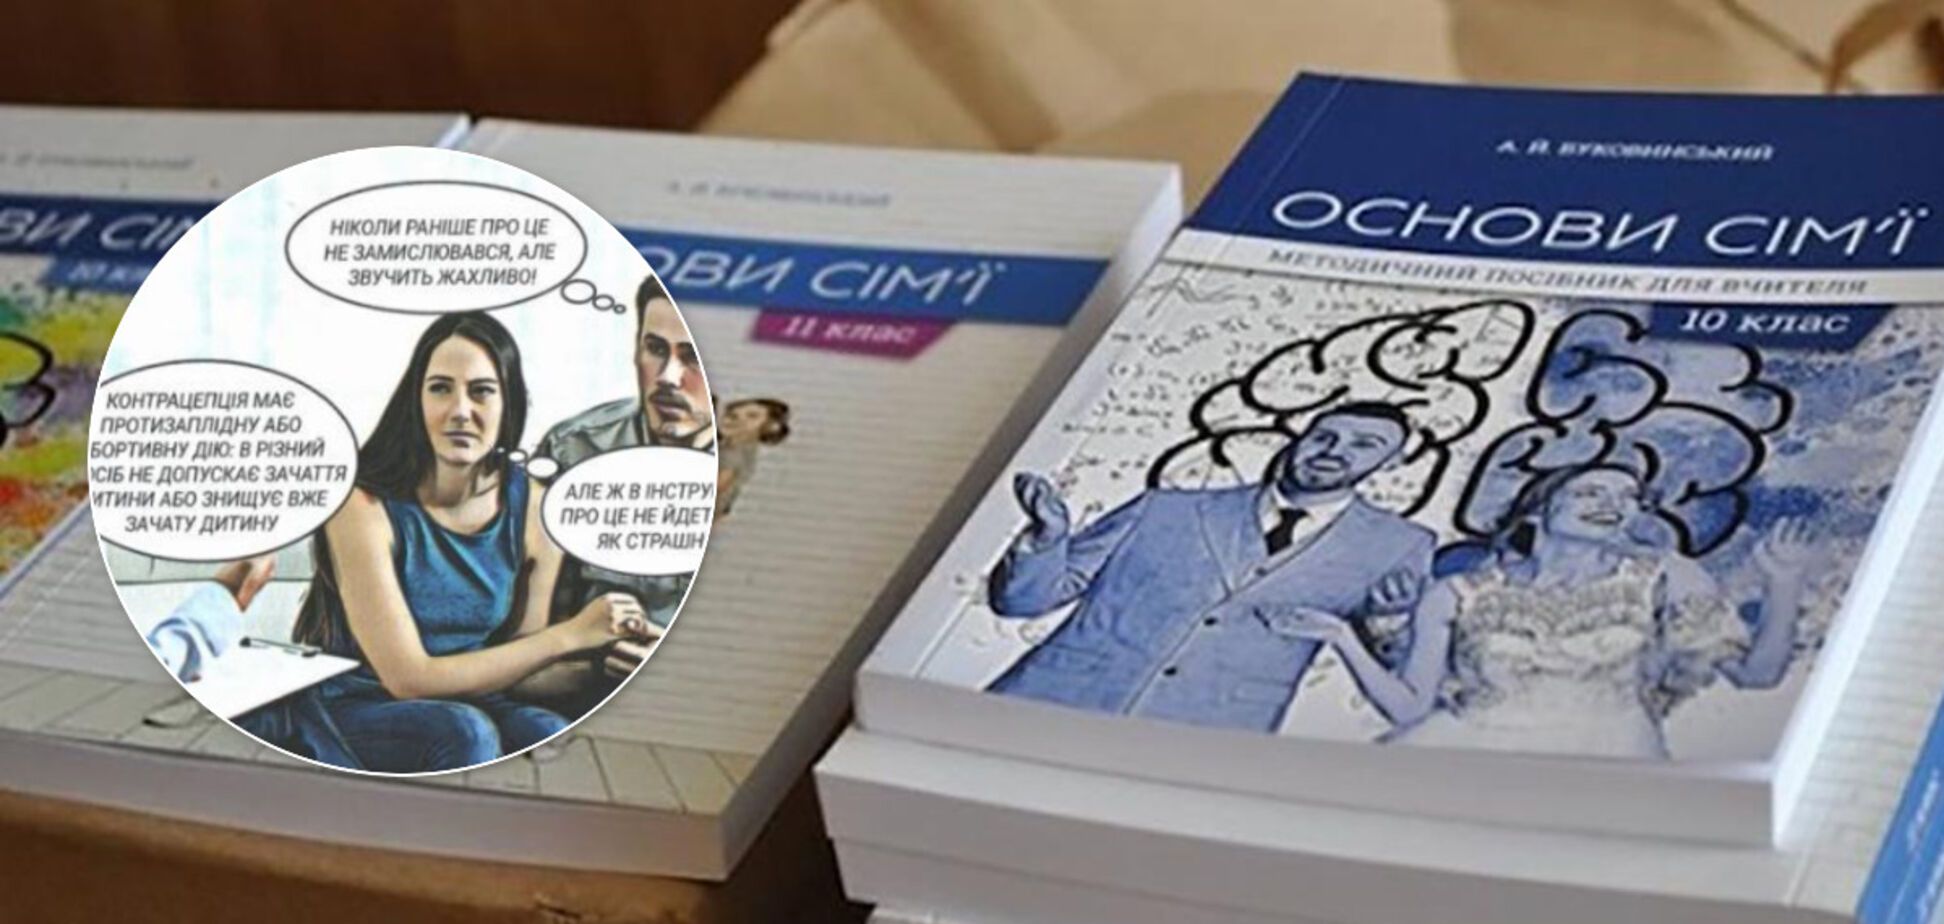 Аборты – убийство, презервативы – зло? В Украине разгорается скандал вокруг учебника для школьников